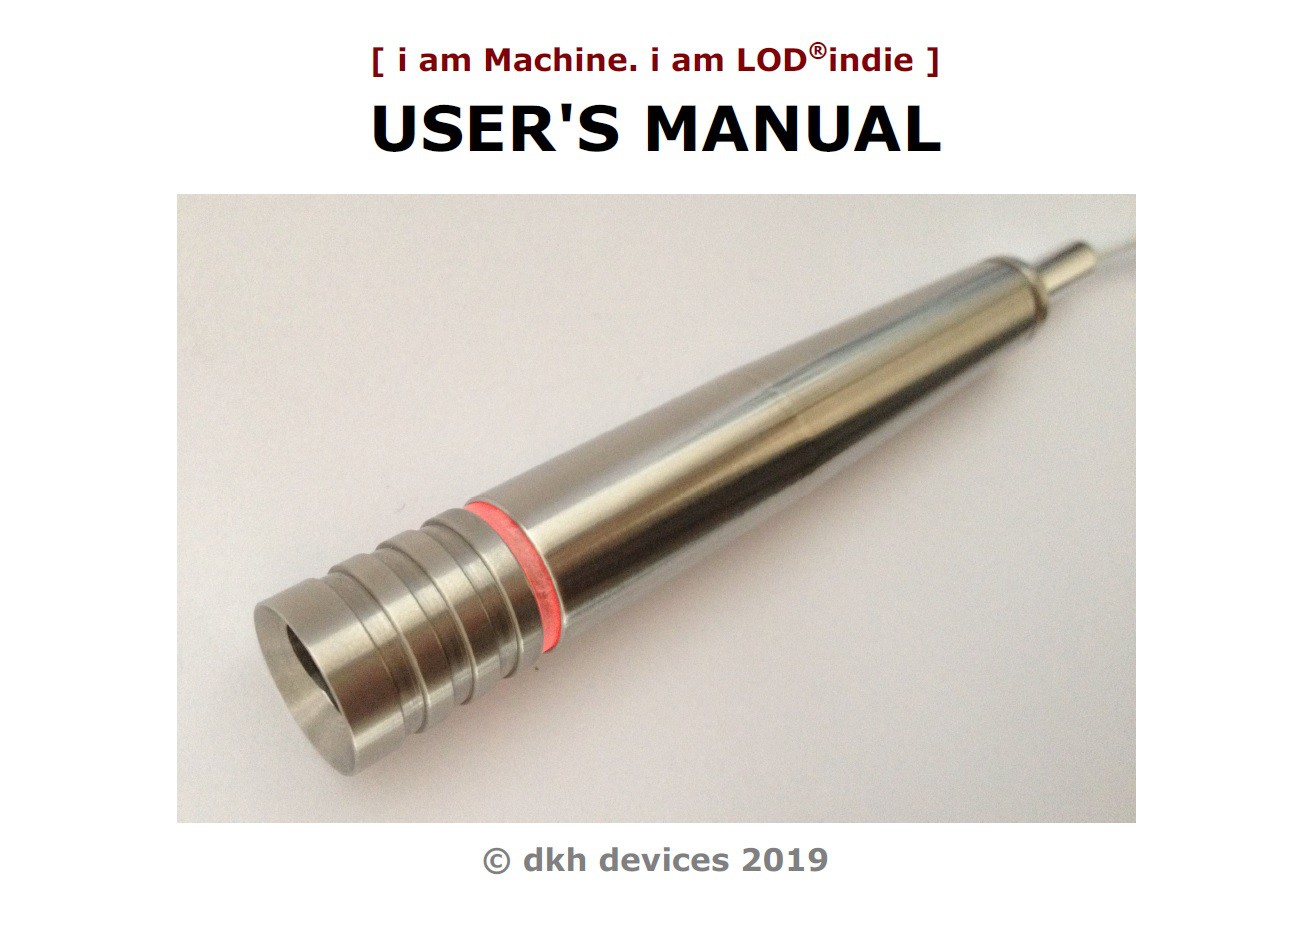 LOD®indie user's manual